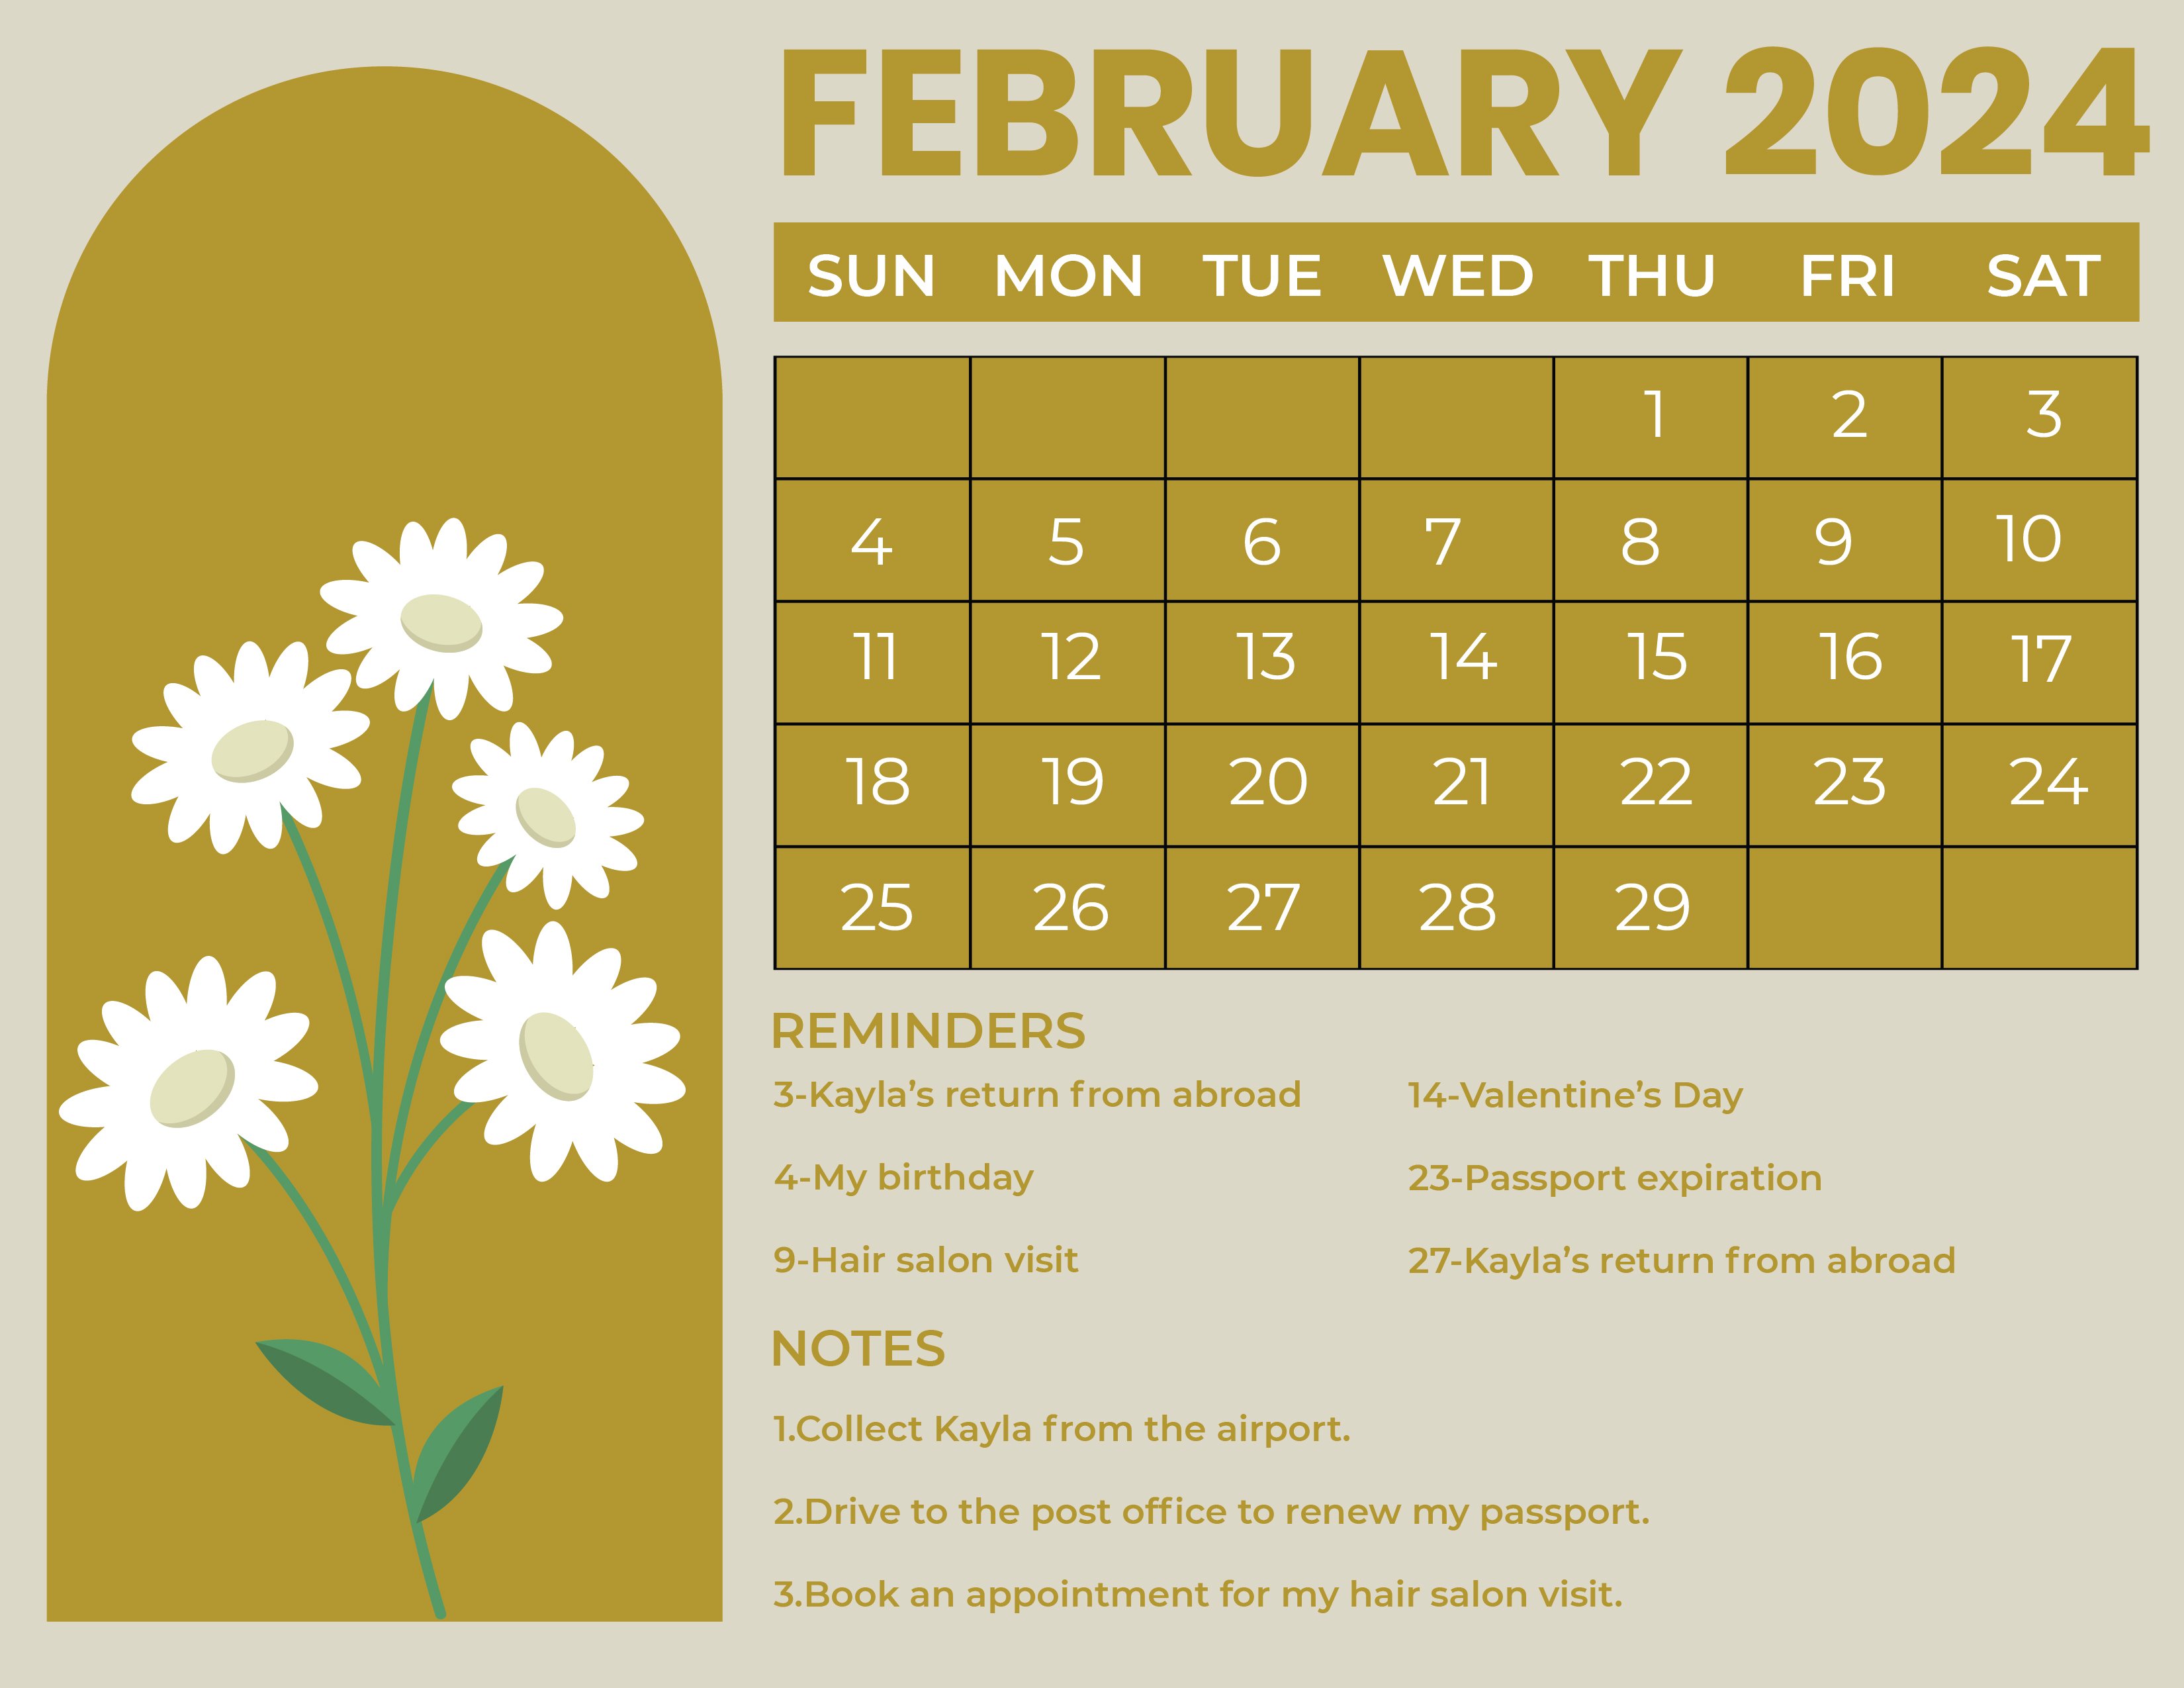 Free Printable February 2024 Calendar in Word, Illustrator, EPS, SVG, JPG